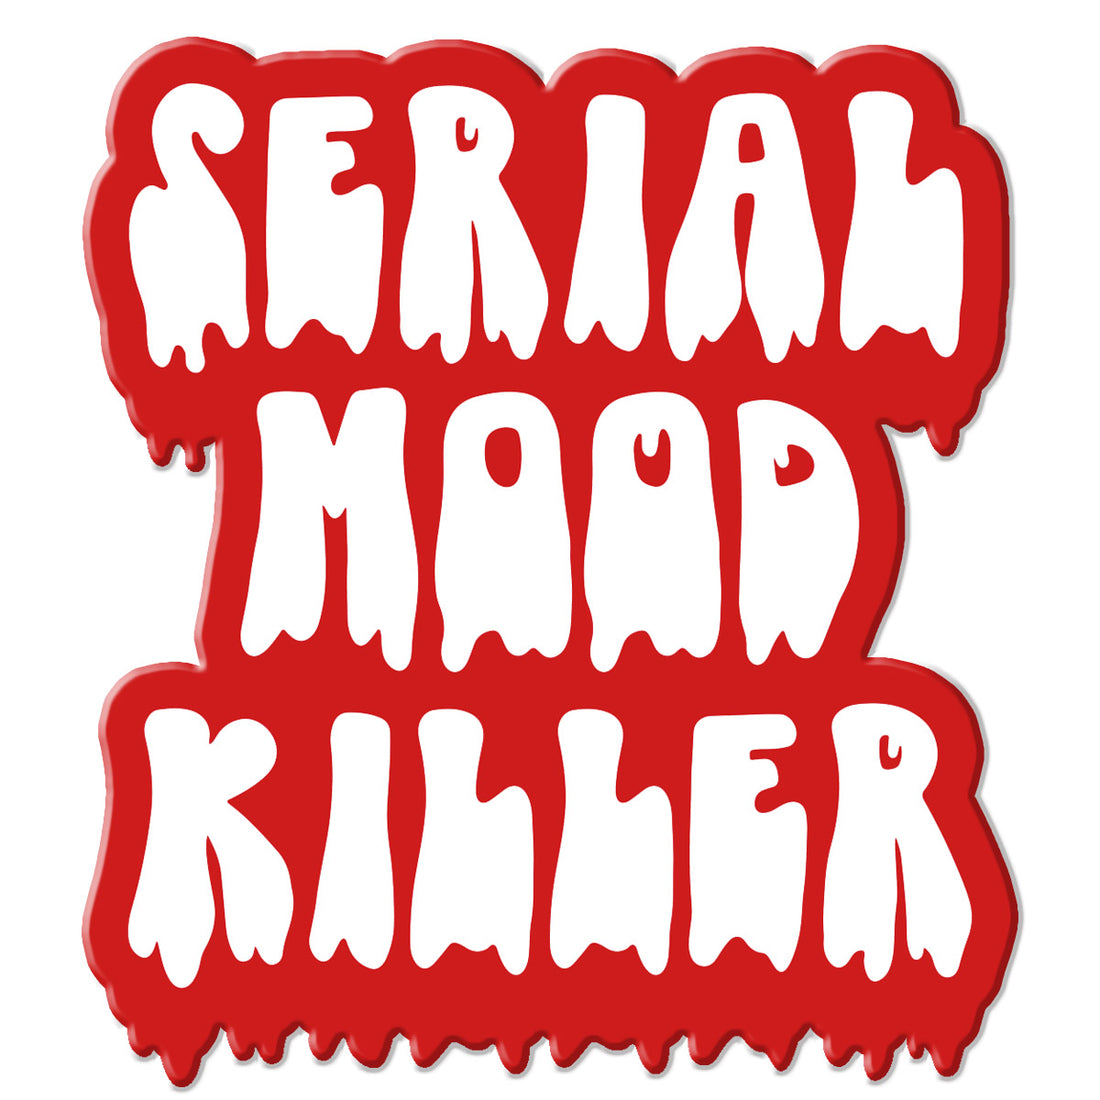 serial mood killer sticker